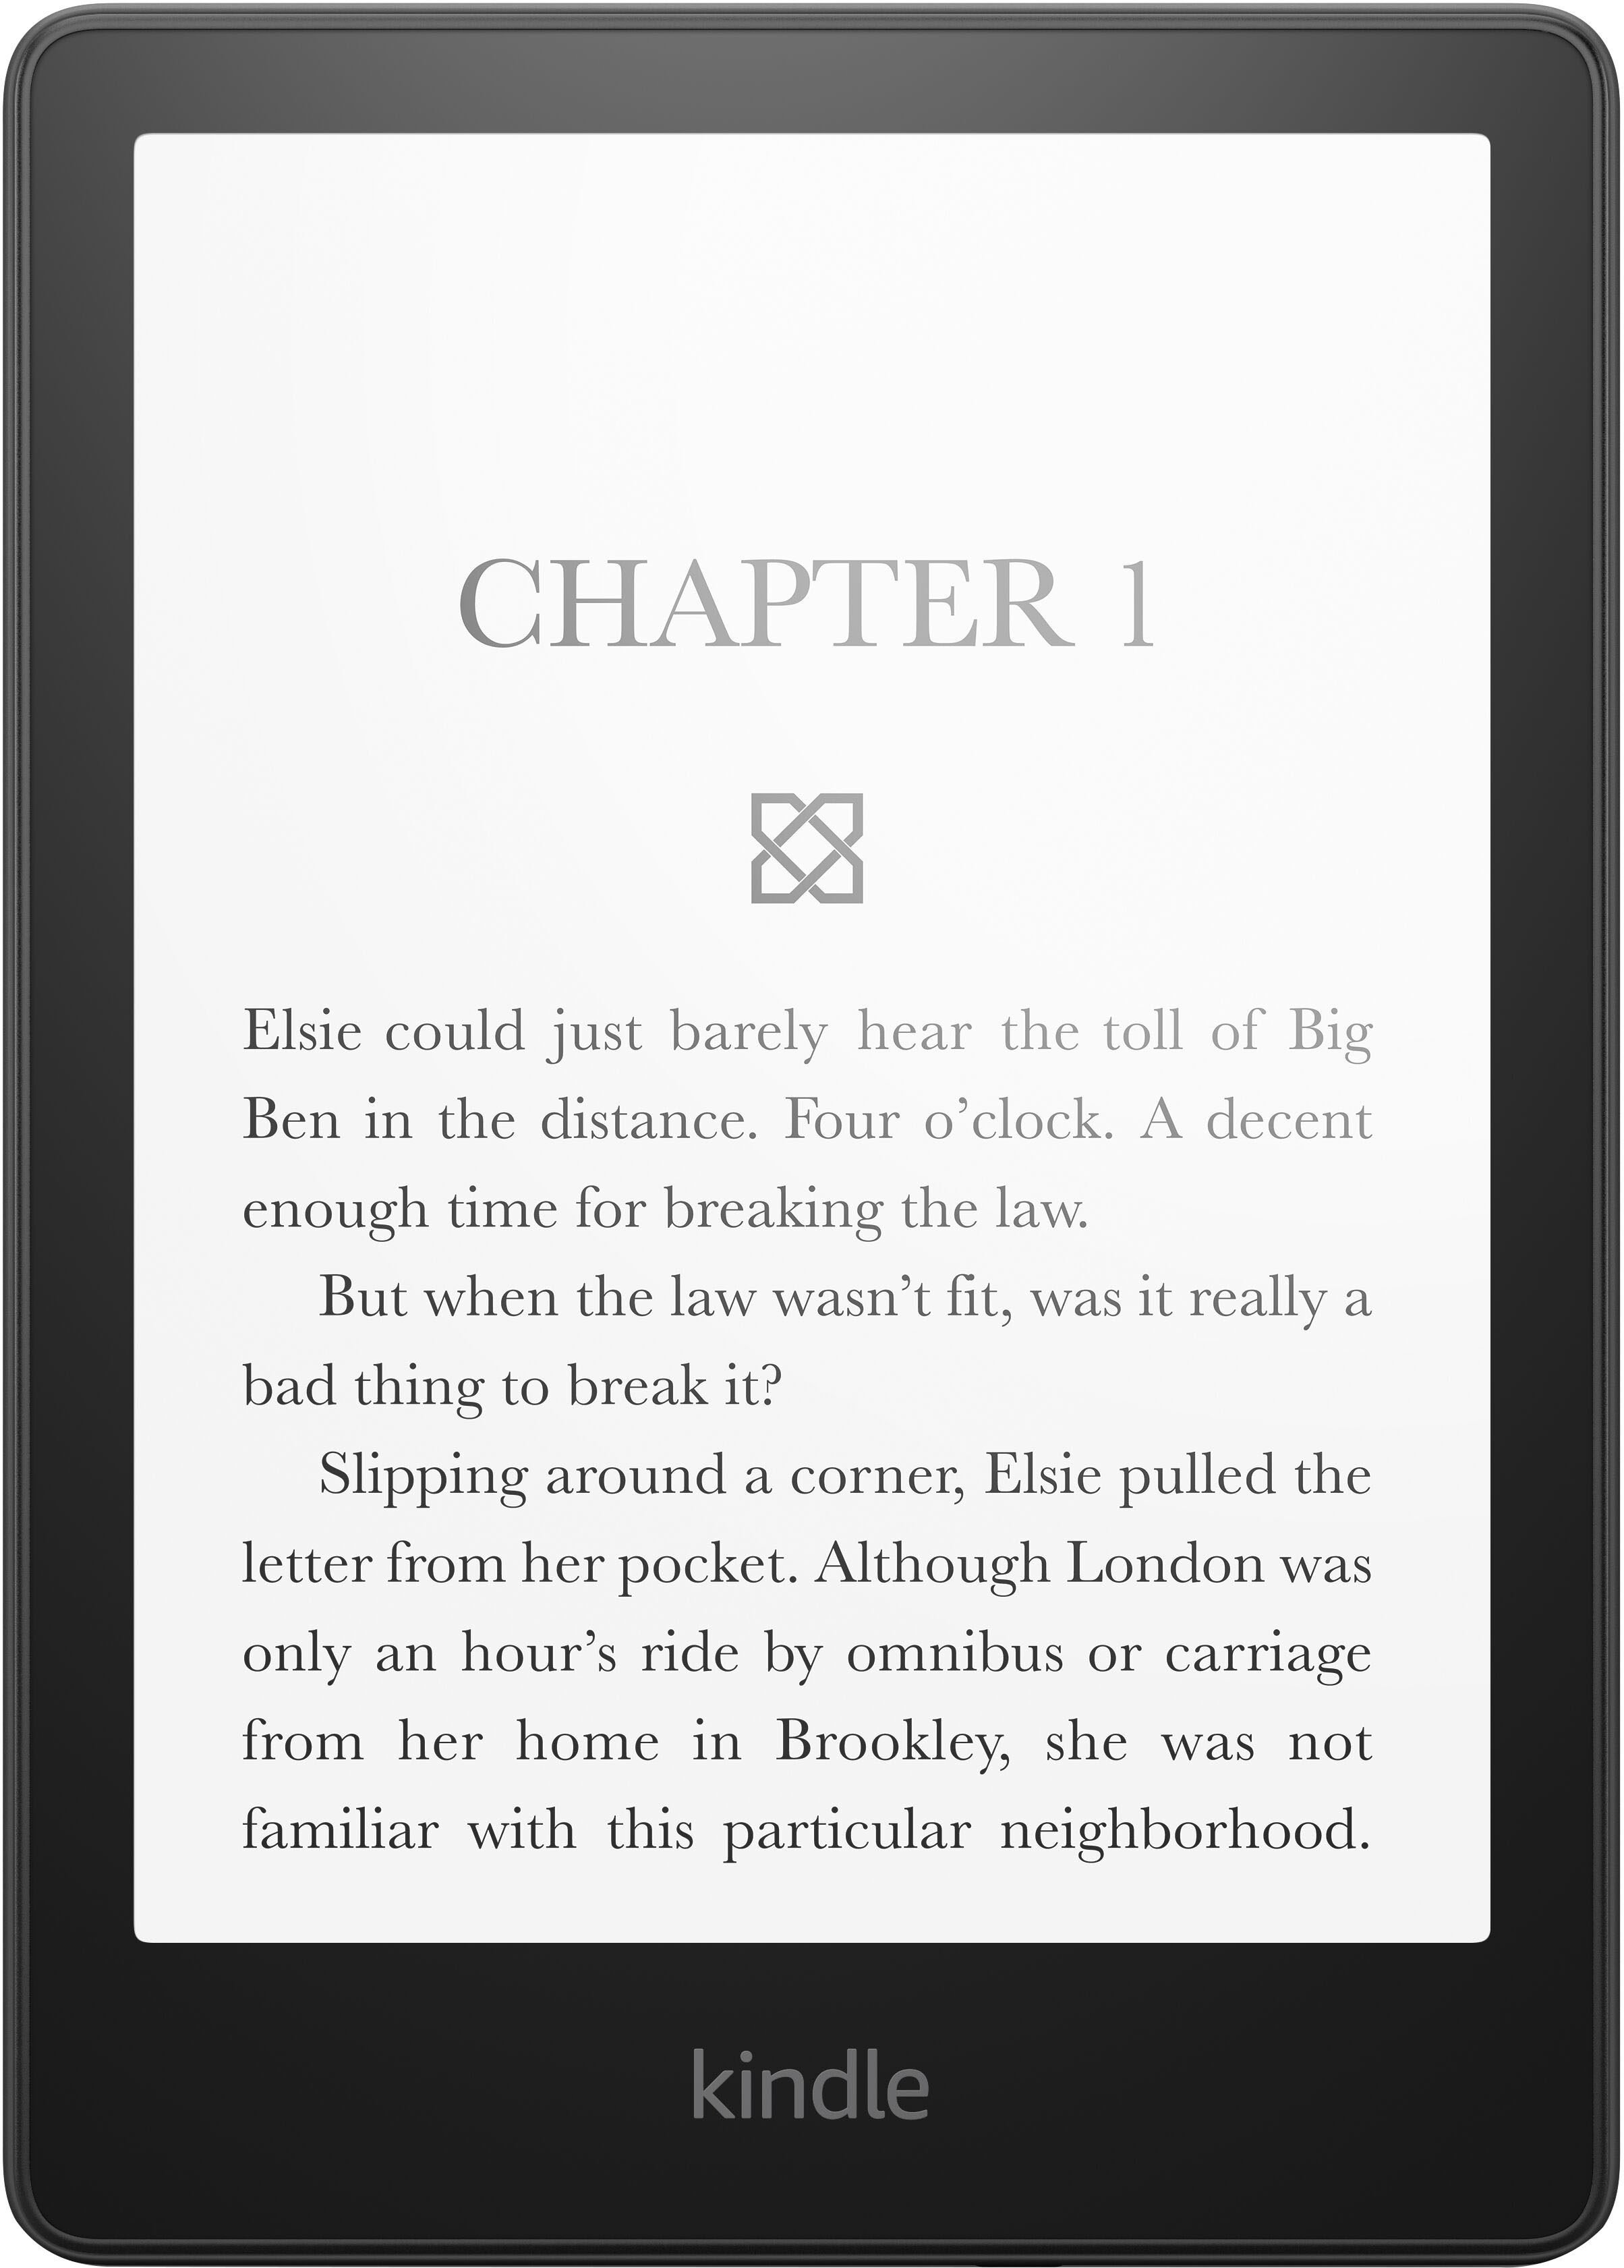 購入オンラインストア Kindle Amazon Paperwhite ブラック 8GB Wi-Fi 電子ブックリーダー